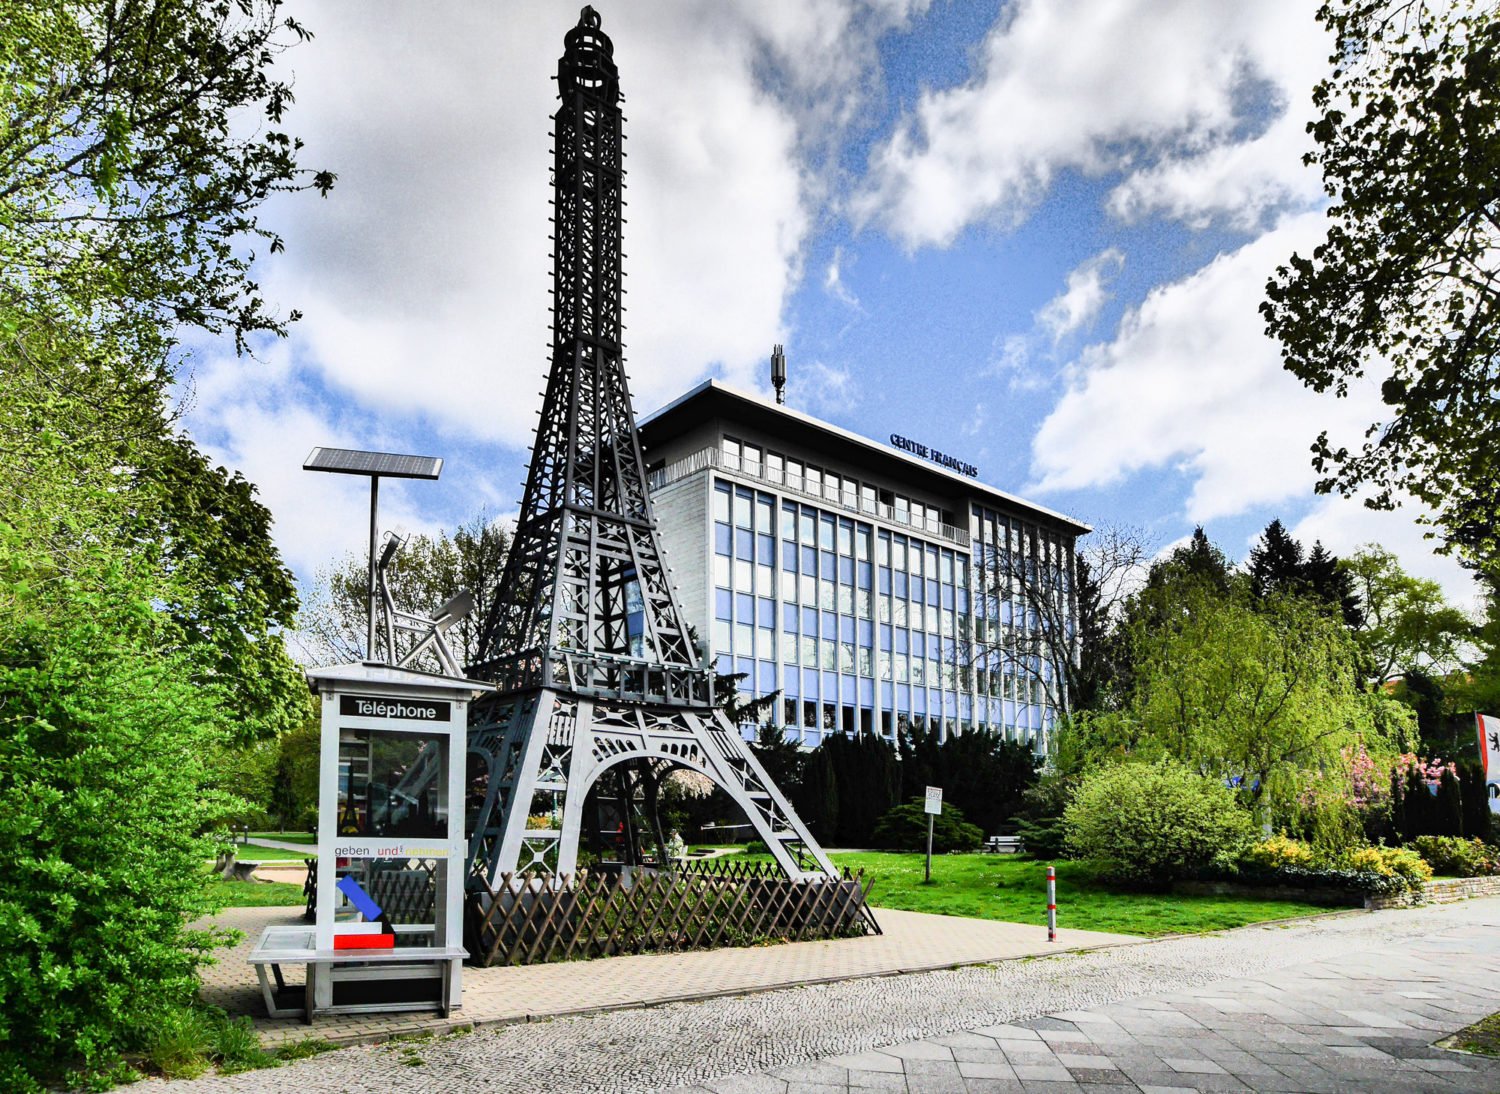 Frankreich in Berlin: Am Centre français in Wedding gibt es eine eine Eiffeltum-Miniatur. Foto: Imago/Ritter